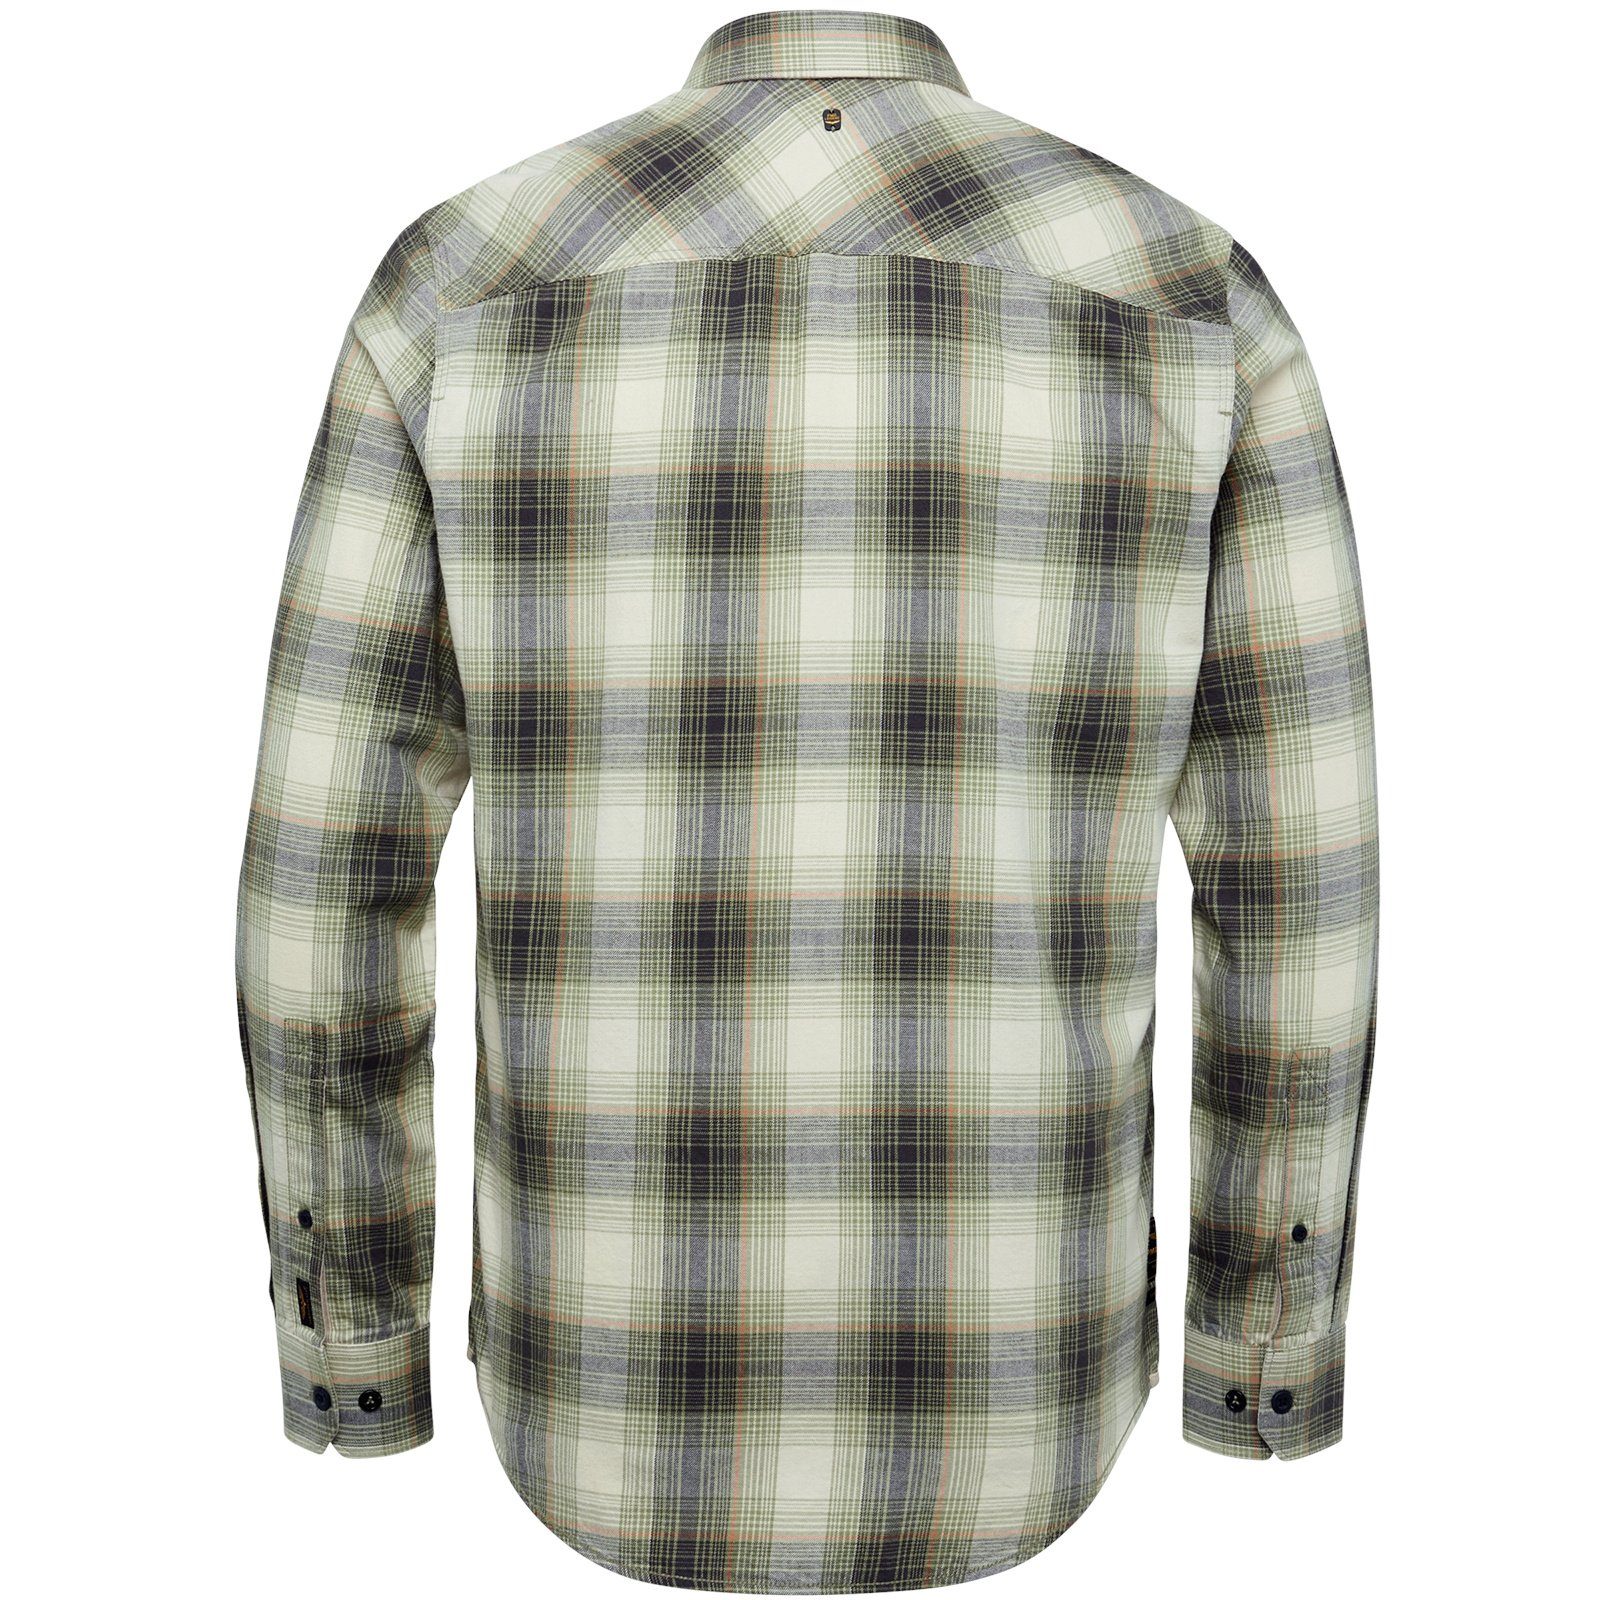 LEGEND grün Ctn Check Shirt Sleeve Long & Twill Yd T-Shirt PME Langarmshirt